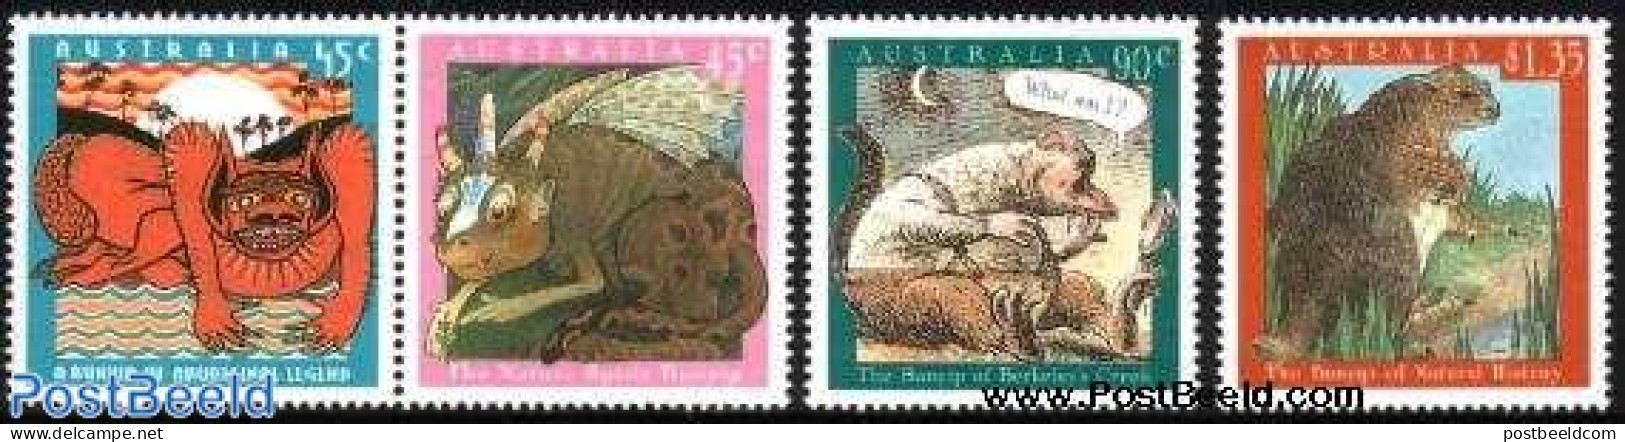 Australia 1994 Bunyip Legend 4v, Mint NH, Art - Fairytales - Unused Stamps